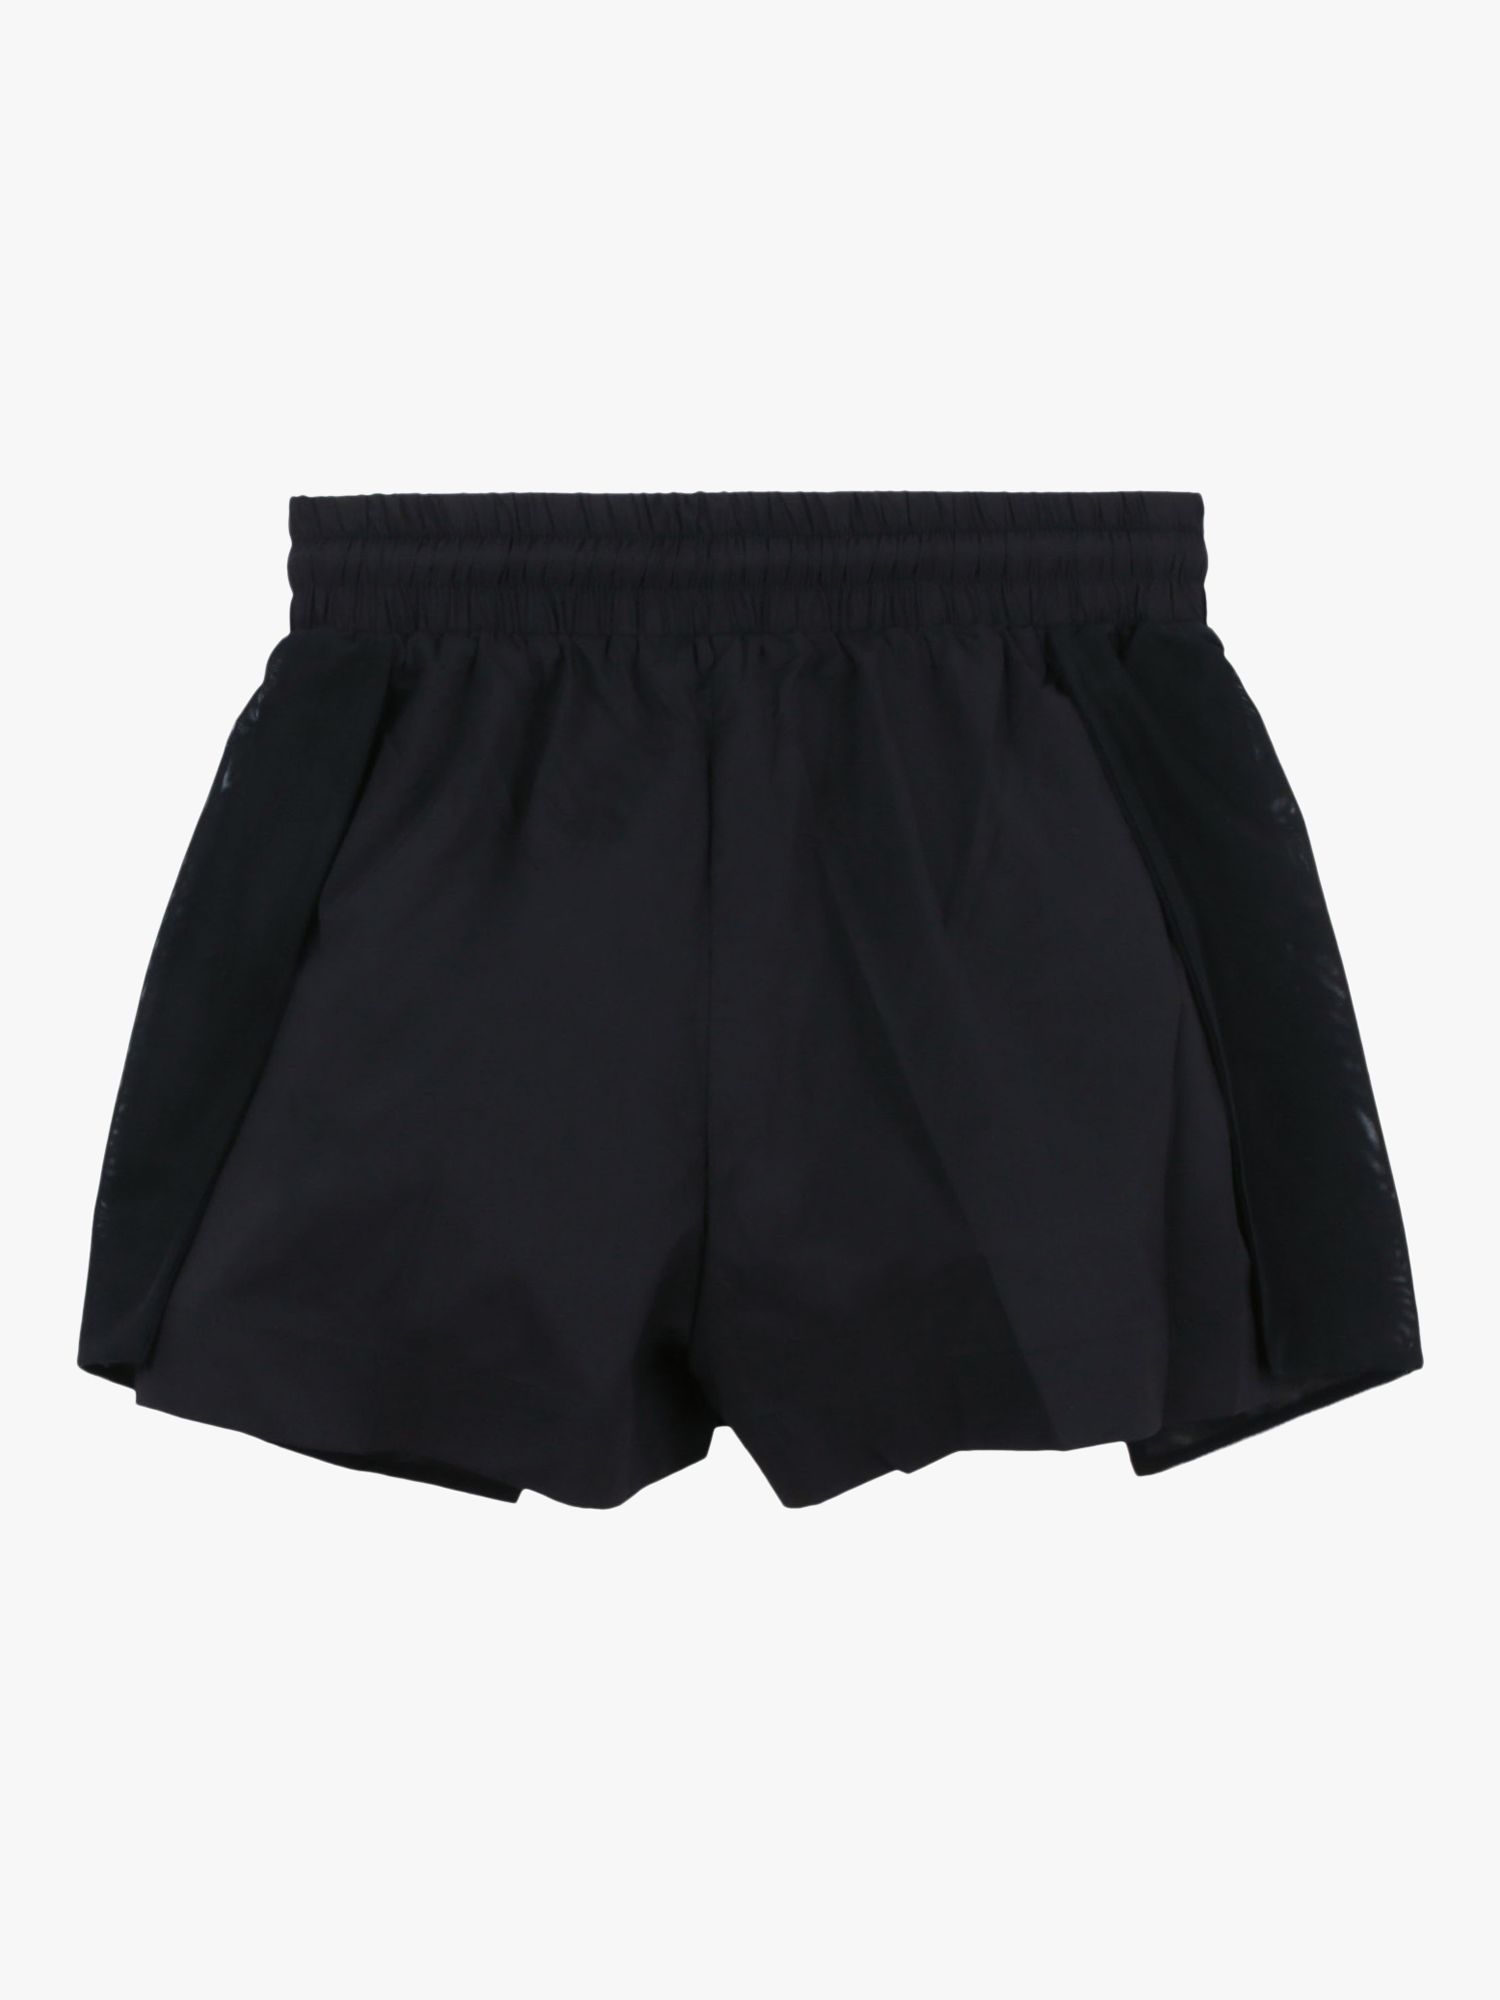 Buy DKNY Kids' Novelty Mesh Shorts, Black Online at johnlewis.com